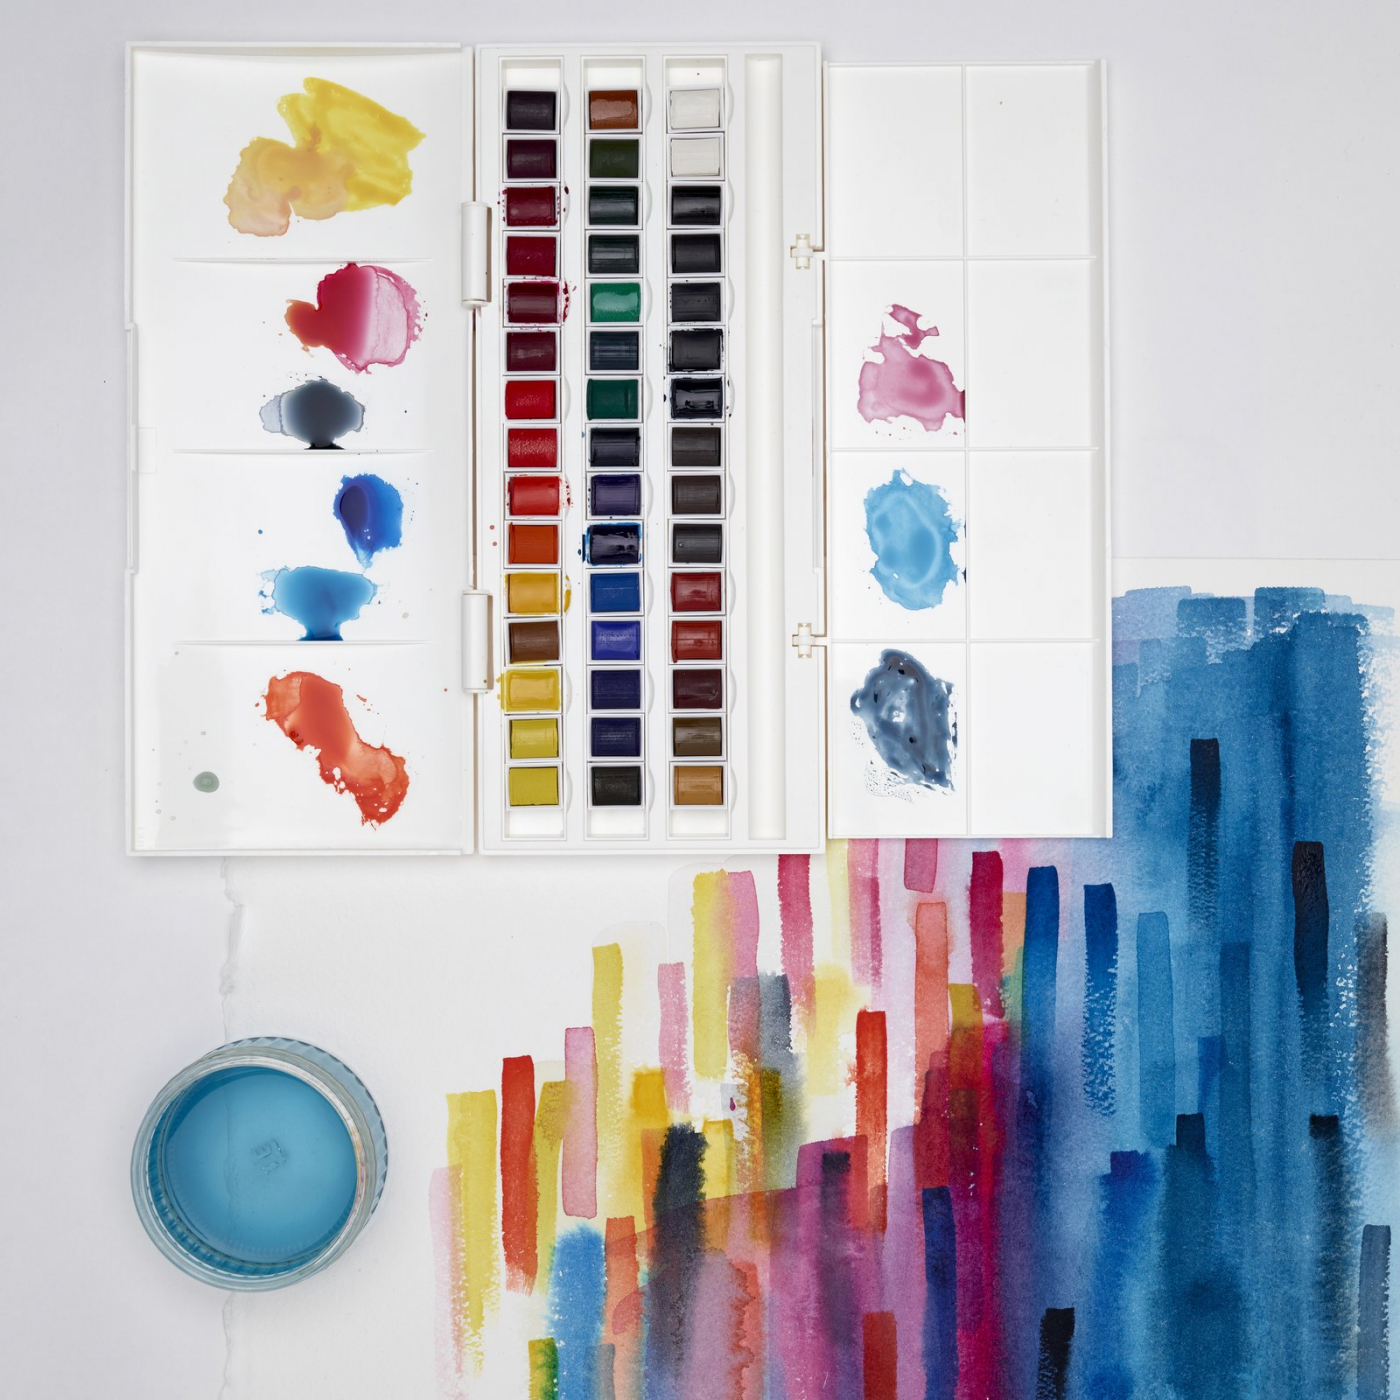 Shinhan Professional Designers Gouache Primary color Paint 15ml x 12 Colors  Set